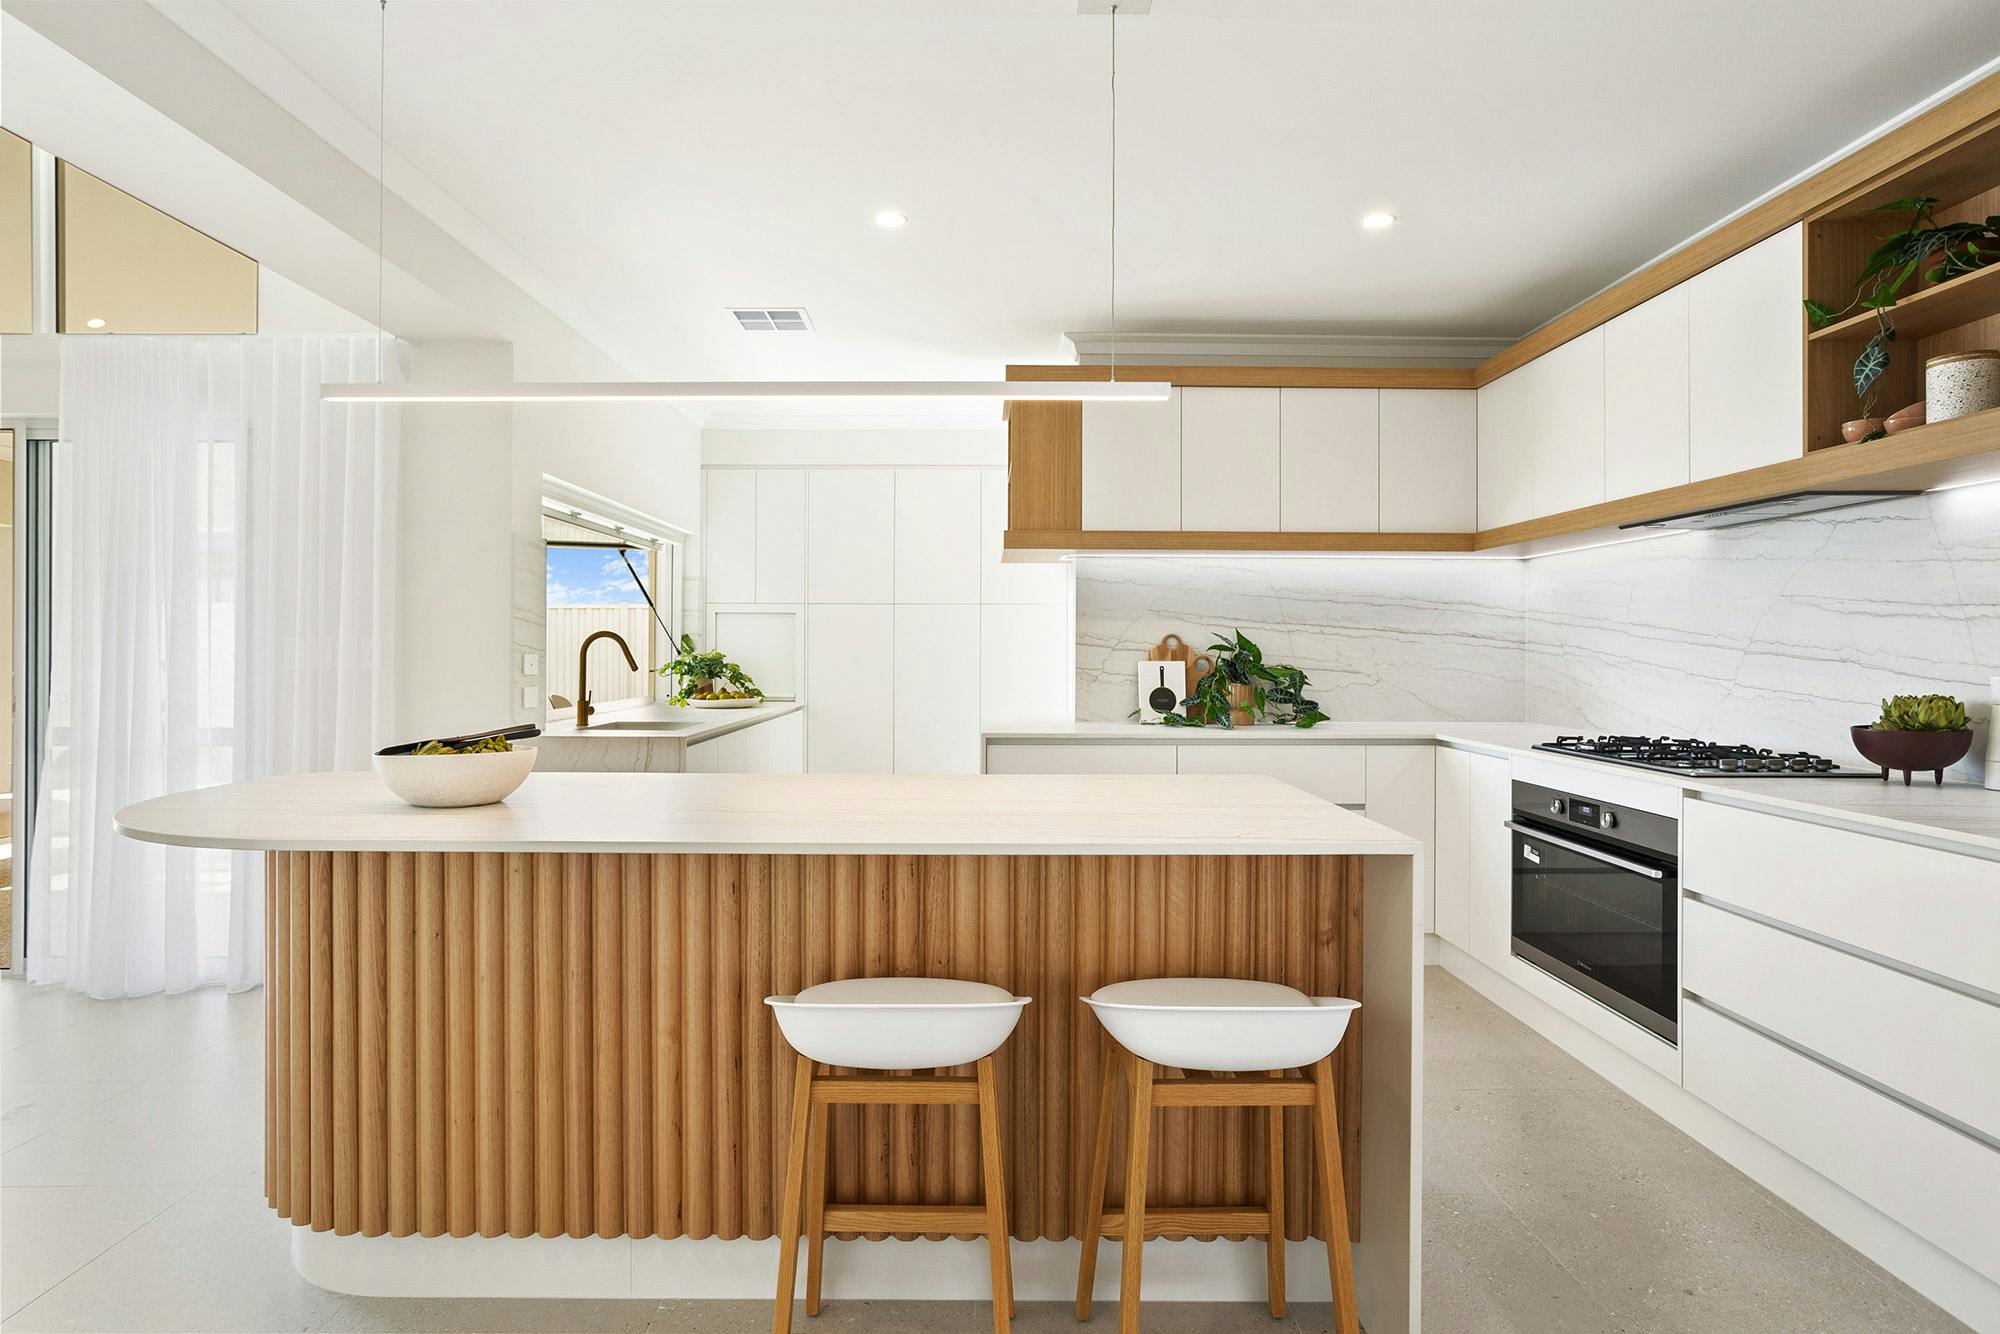 Numero immagine 45 della sezione corrente di Interior designer Katja Suominen chose DKTN Rem countertops for her new kitchen di Cosentino Italia